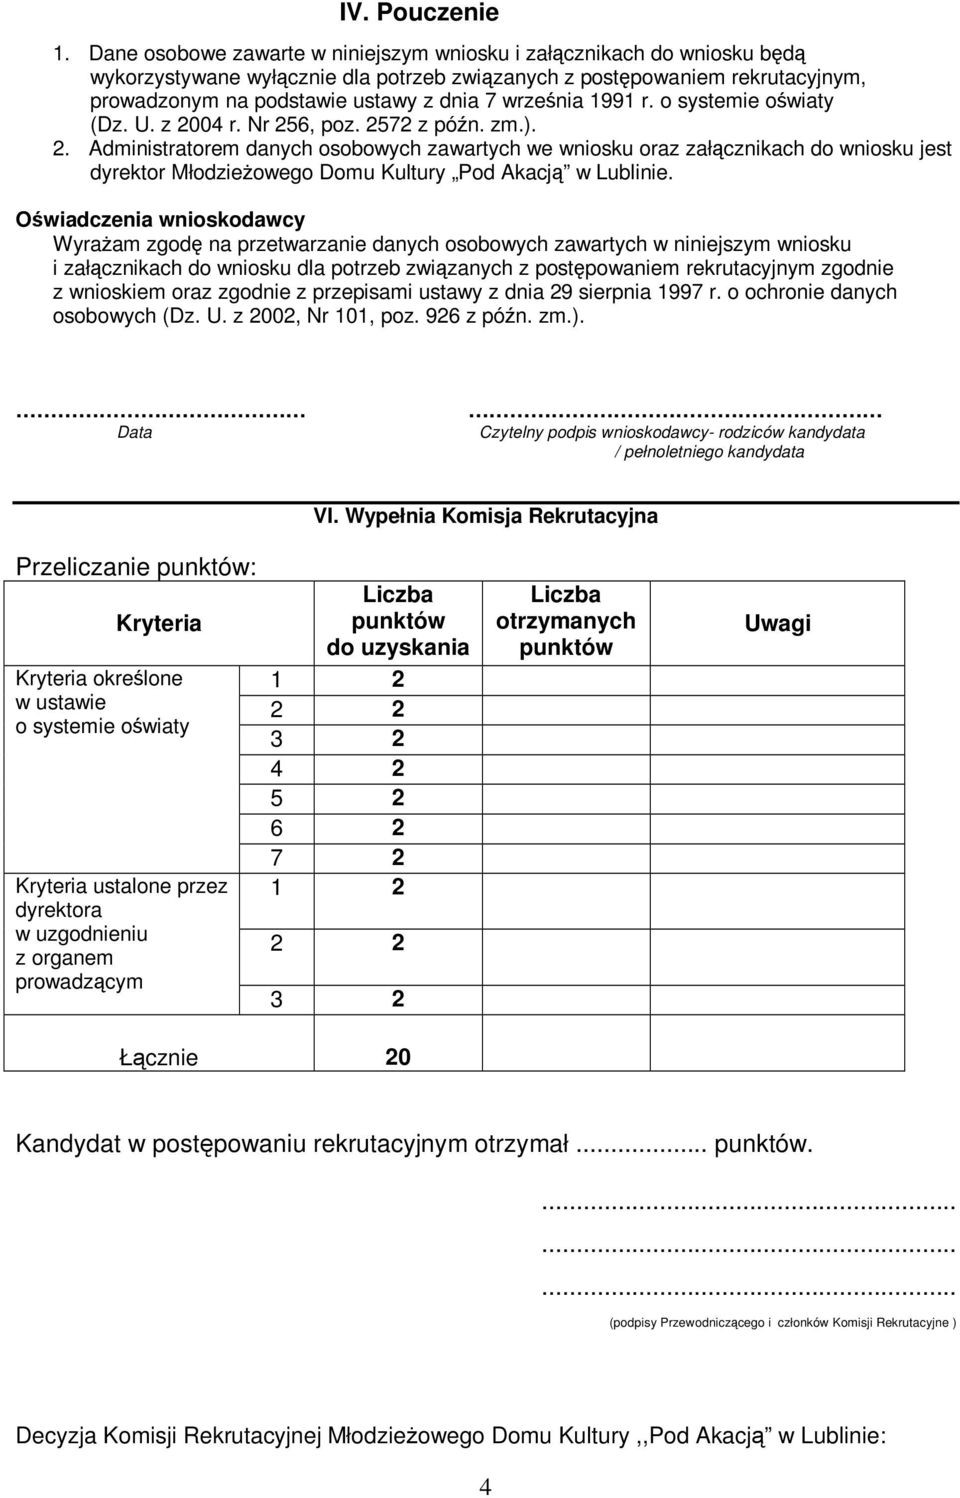 września 1991 r. o systemie oświaty (Dz. U. z 200 r. Nr 256, poz. 2572 z późn. zm.). 2. Administratorem danych osobowych zawartych we wniosku oraz załącznikach do wniosku jest dyrektor Młodzieżowego Domu Kultury Pod Akacją w Lublinie.